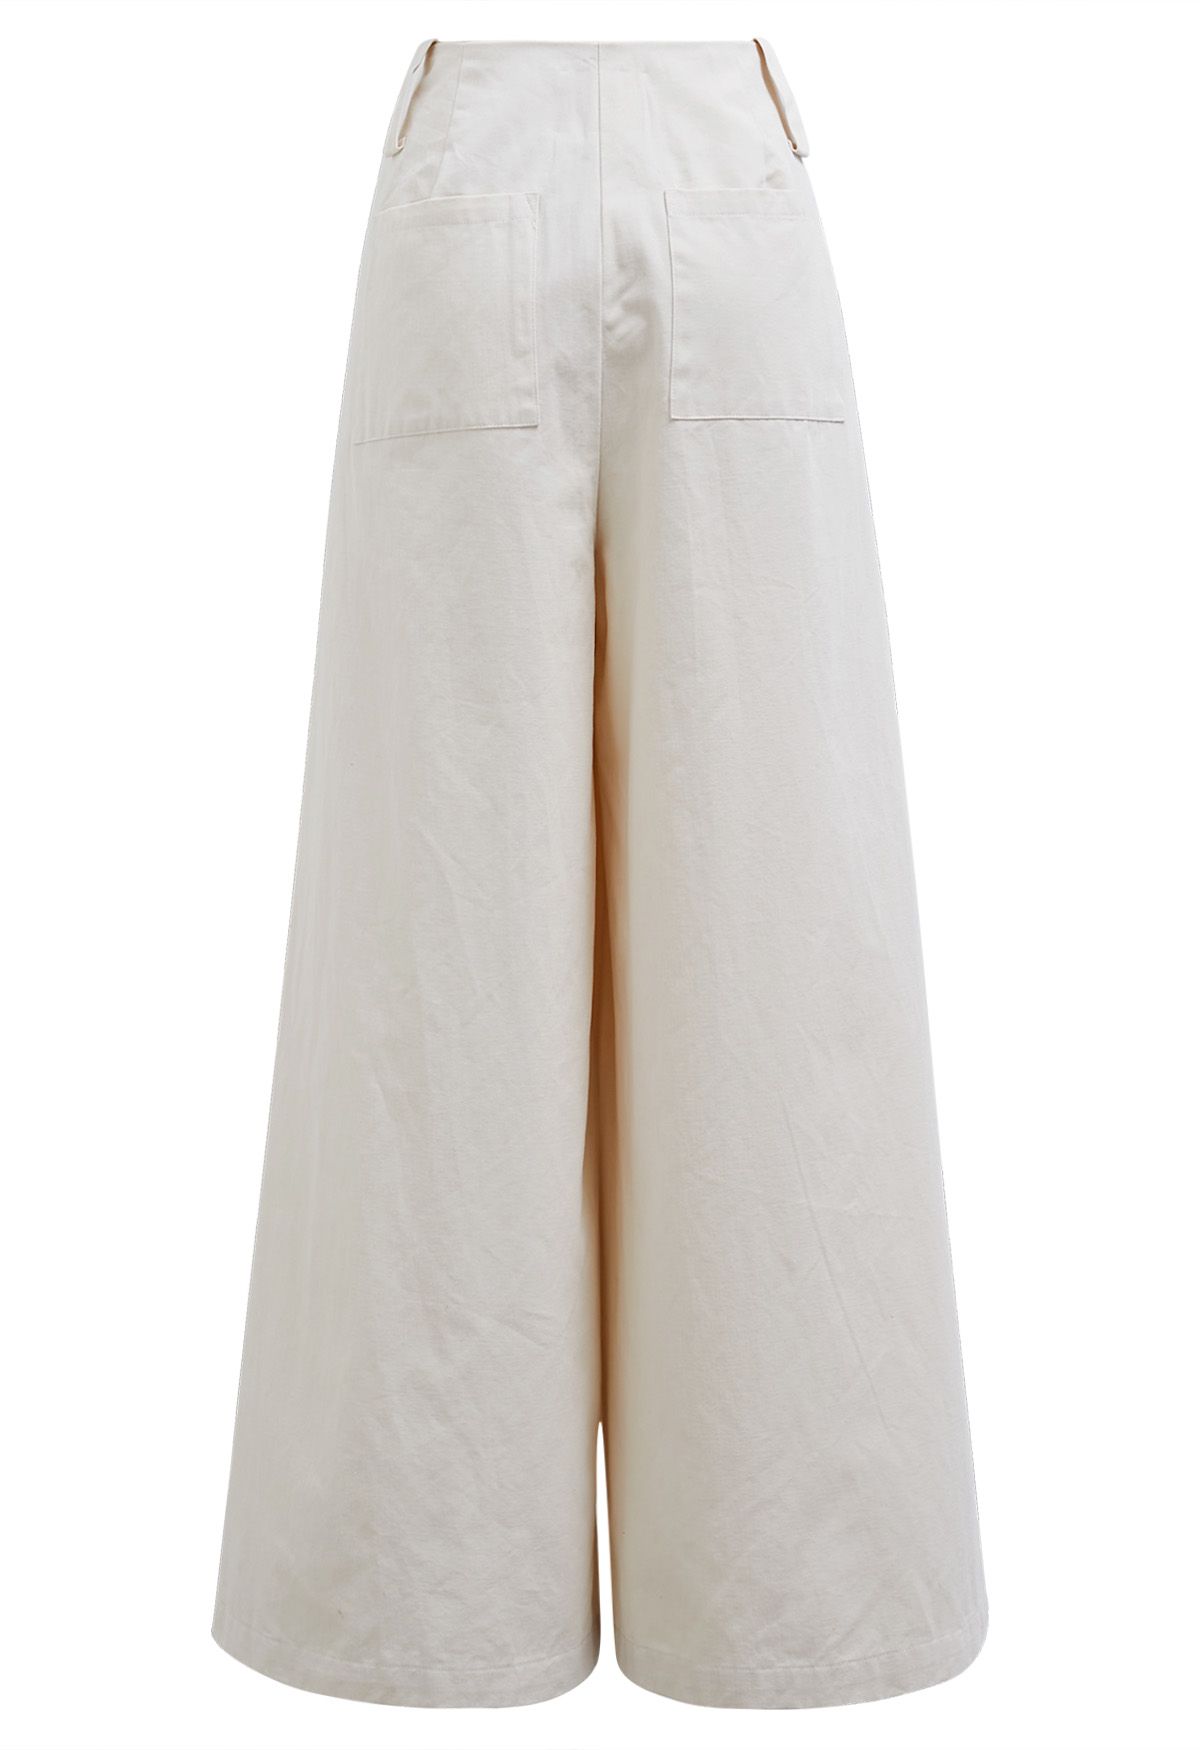 Cómodos pantalones anchos de algodón en color marfil